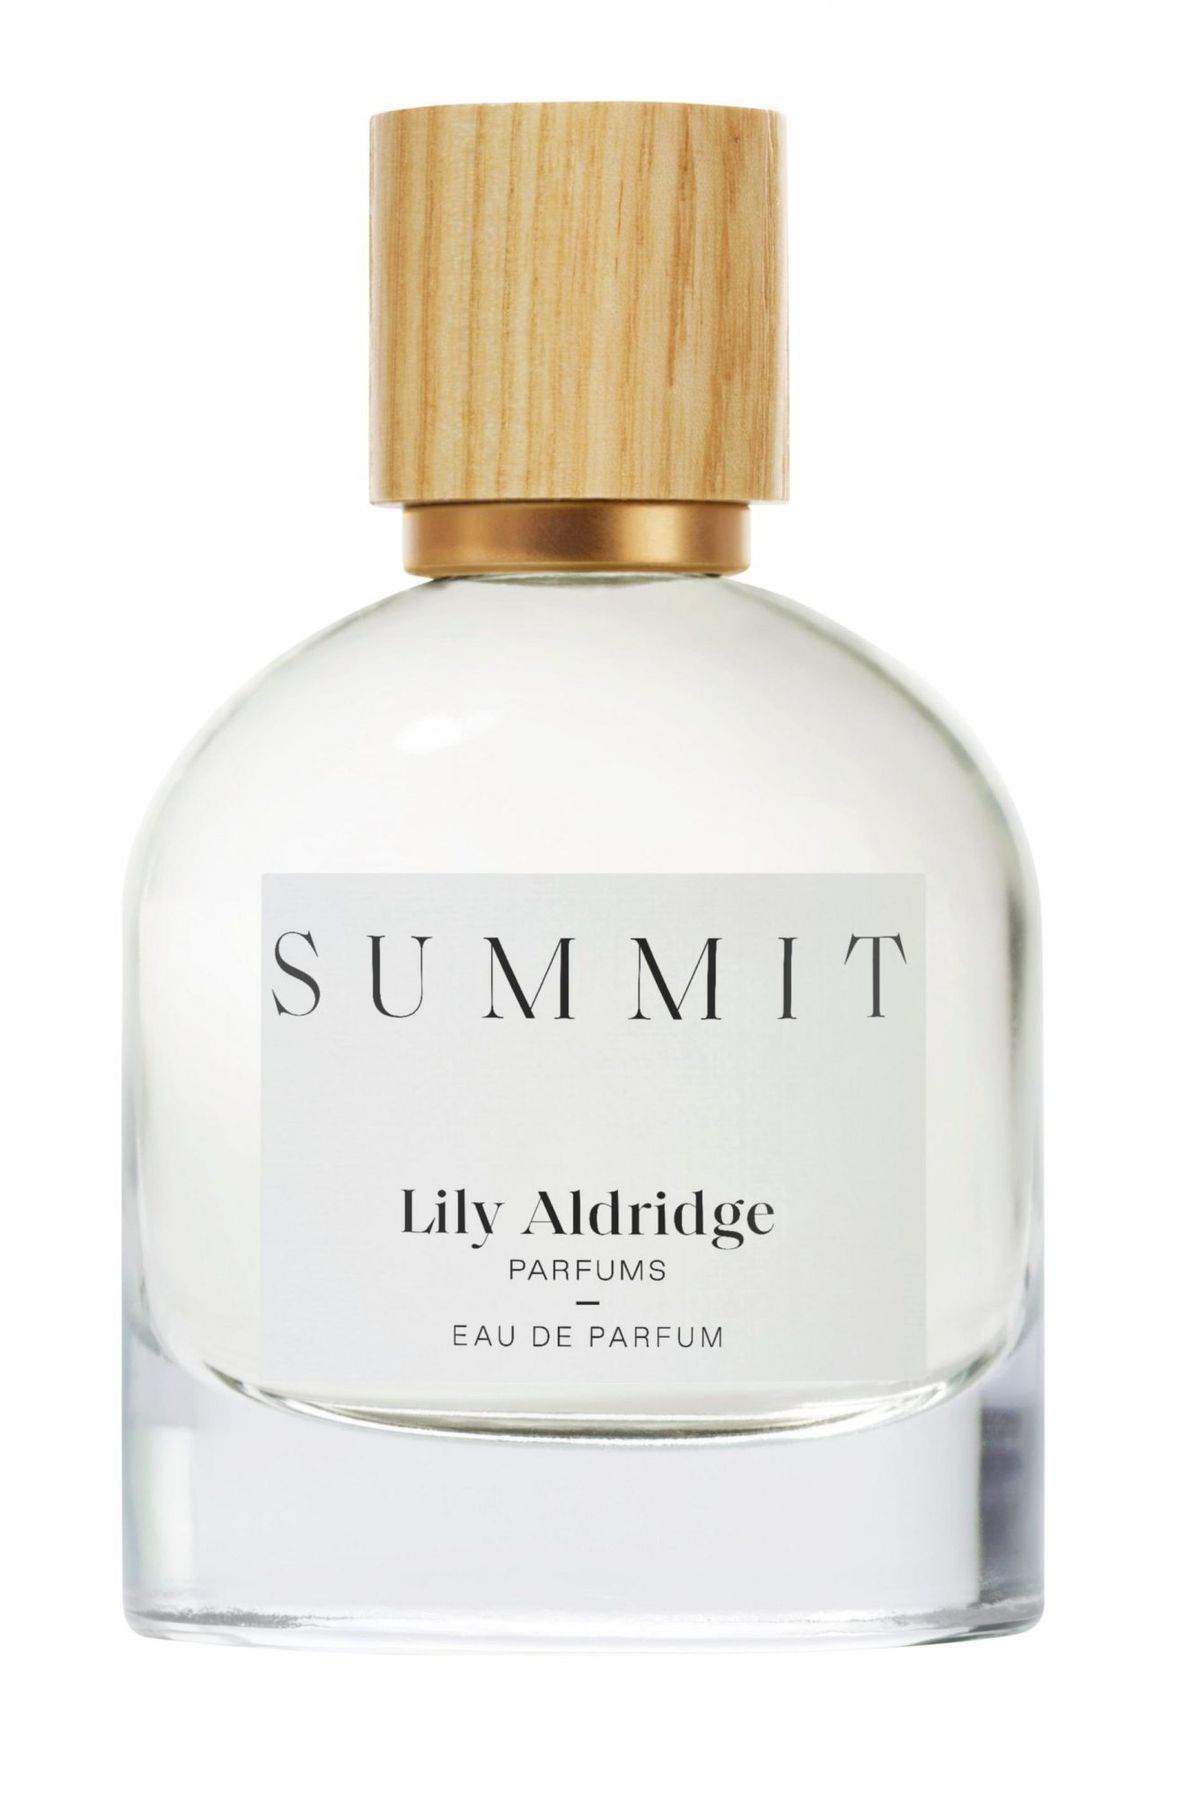 Lily Aldridge